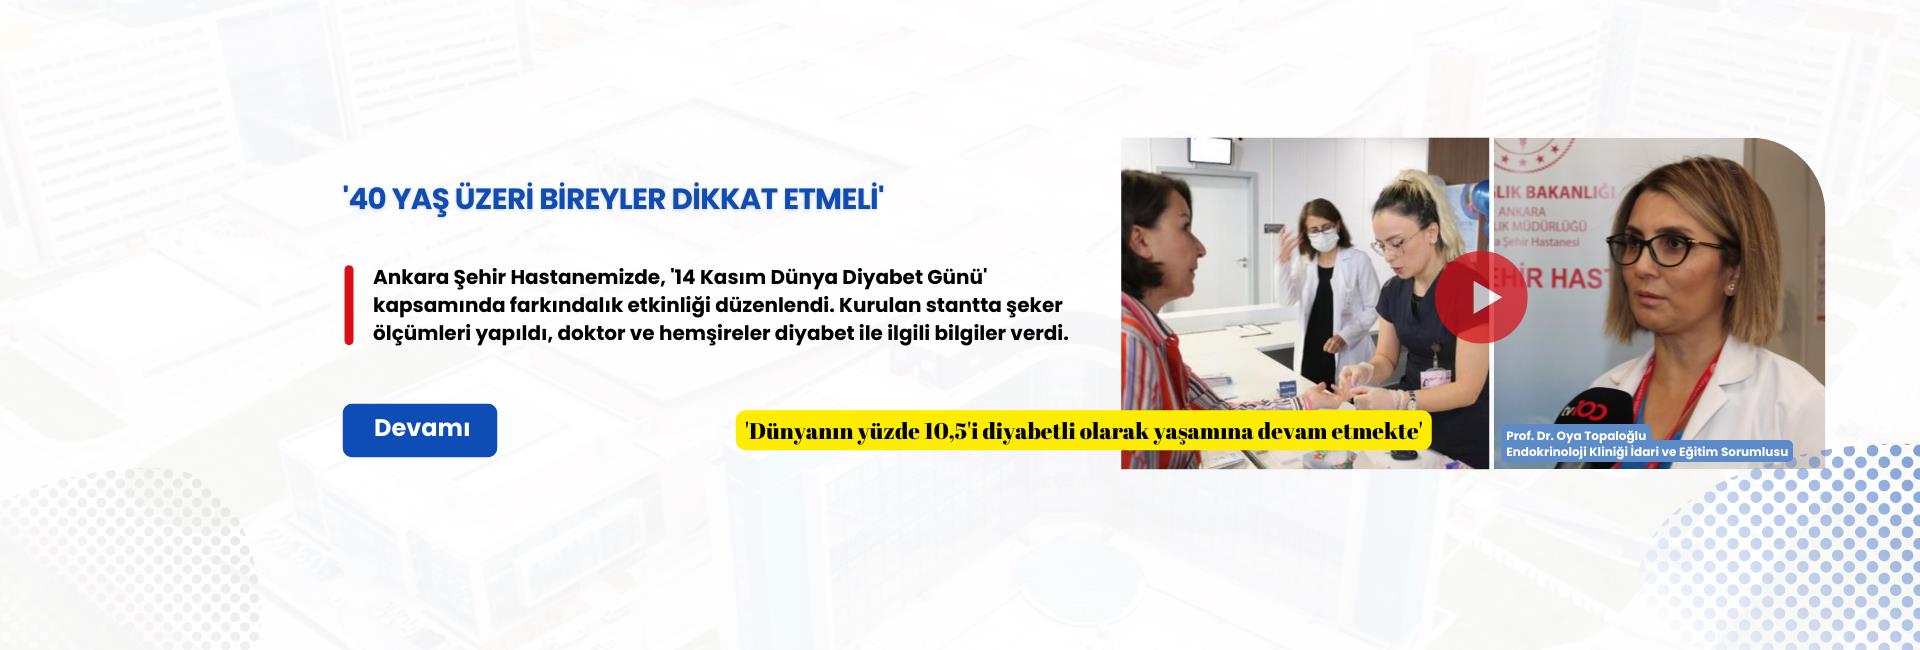 Ankara Şehir Hastanemizde şeker hastalığına (diyabet) farkındalık yaratmak için etkinlik düzenlendi.